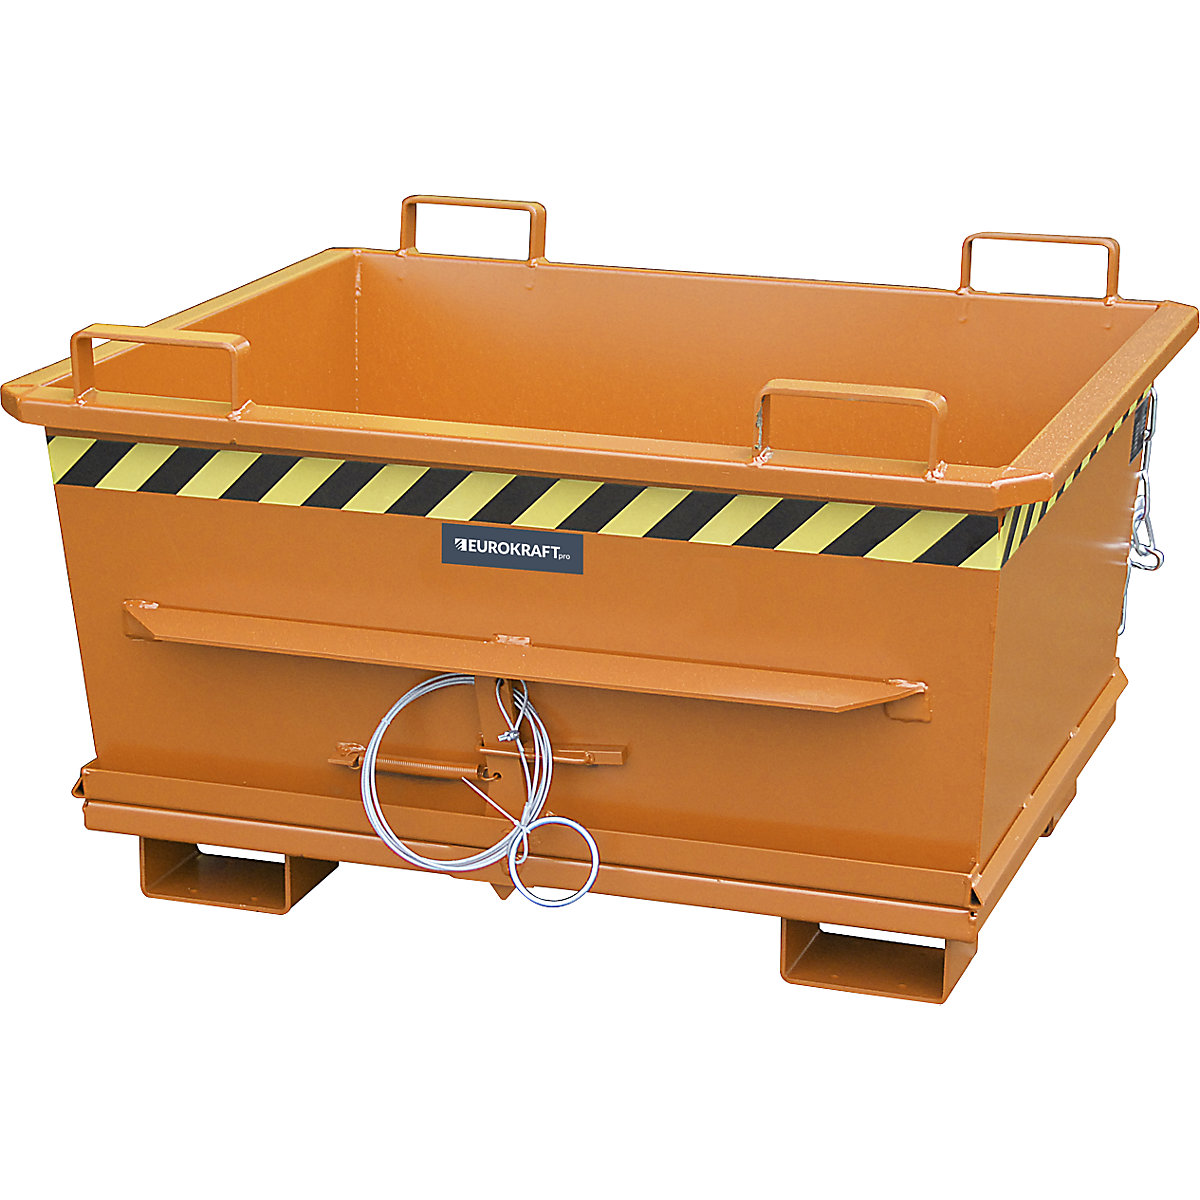 Container conic cu podea pliabilă – eurokraft pro, volum 0,5 m³, capacitate portantă 1000 kg, portocaliu RAL 2000-13